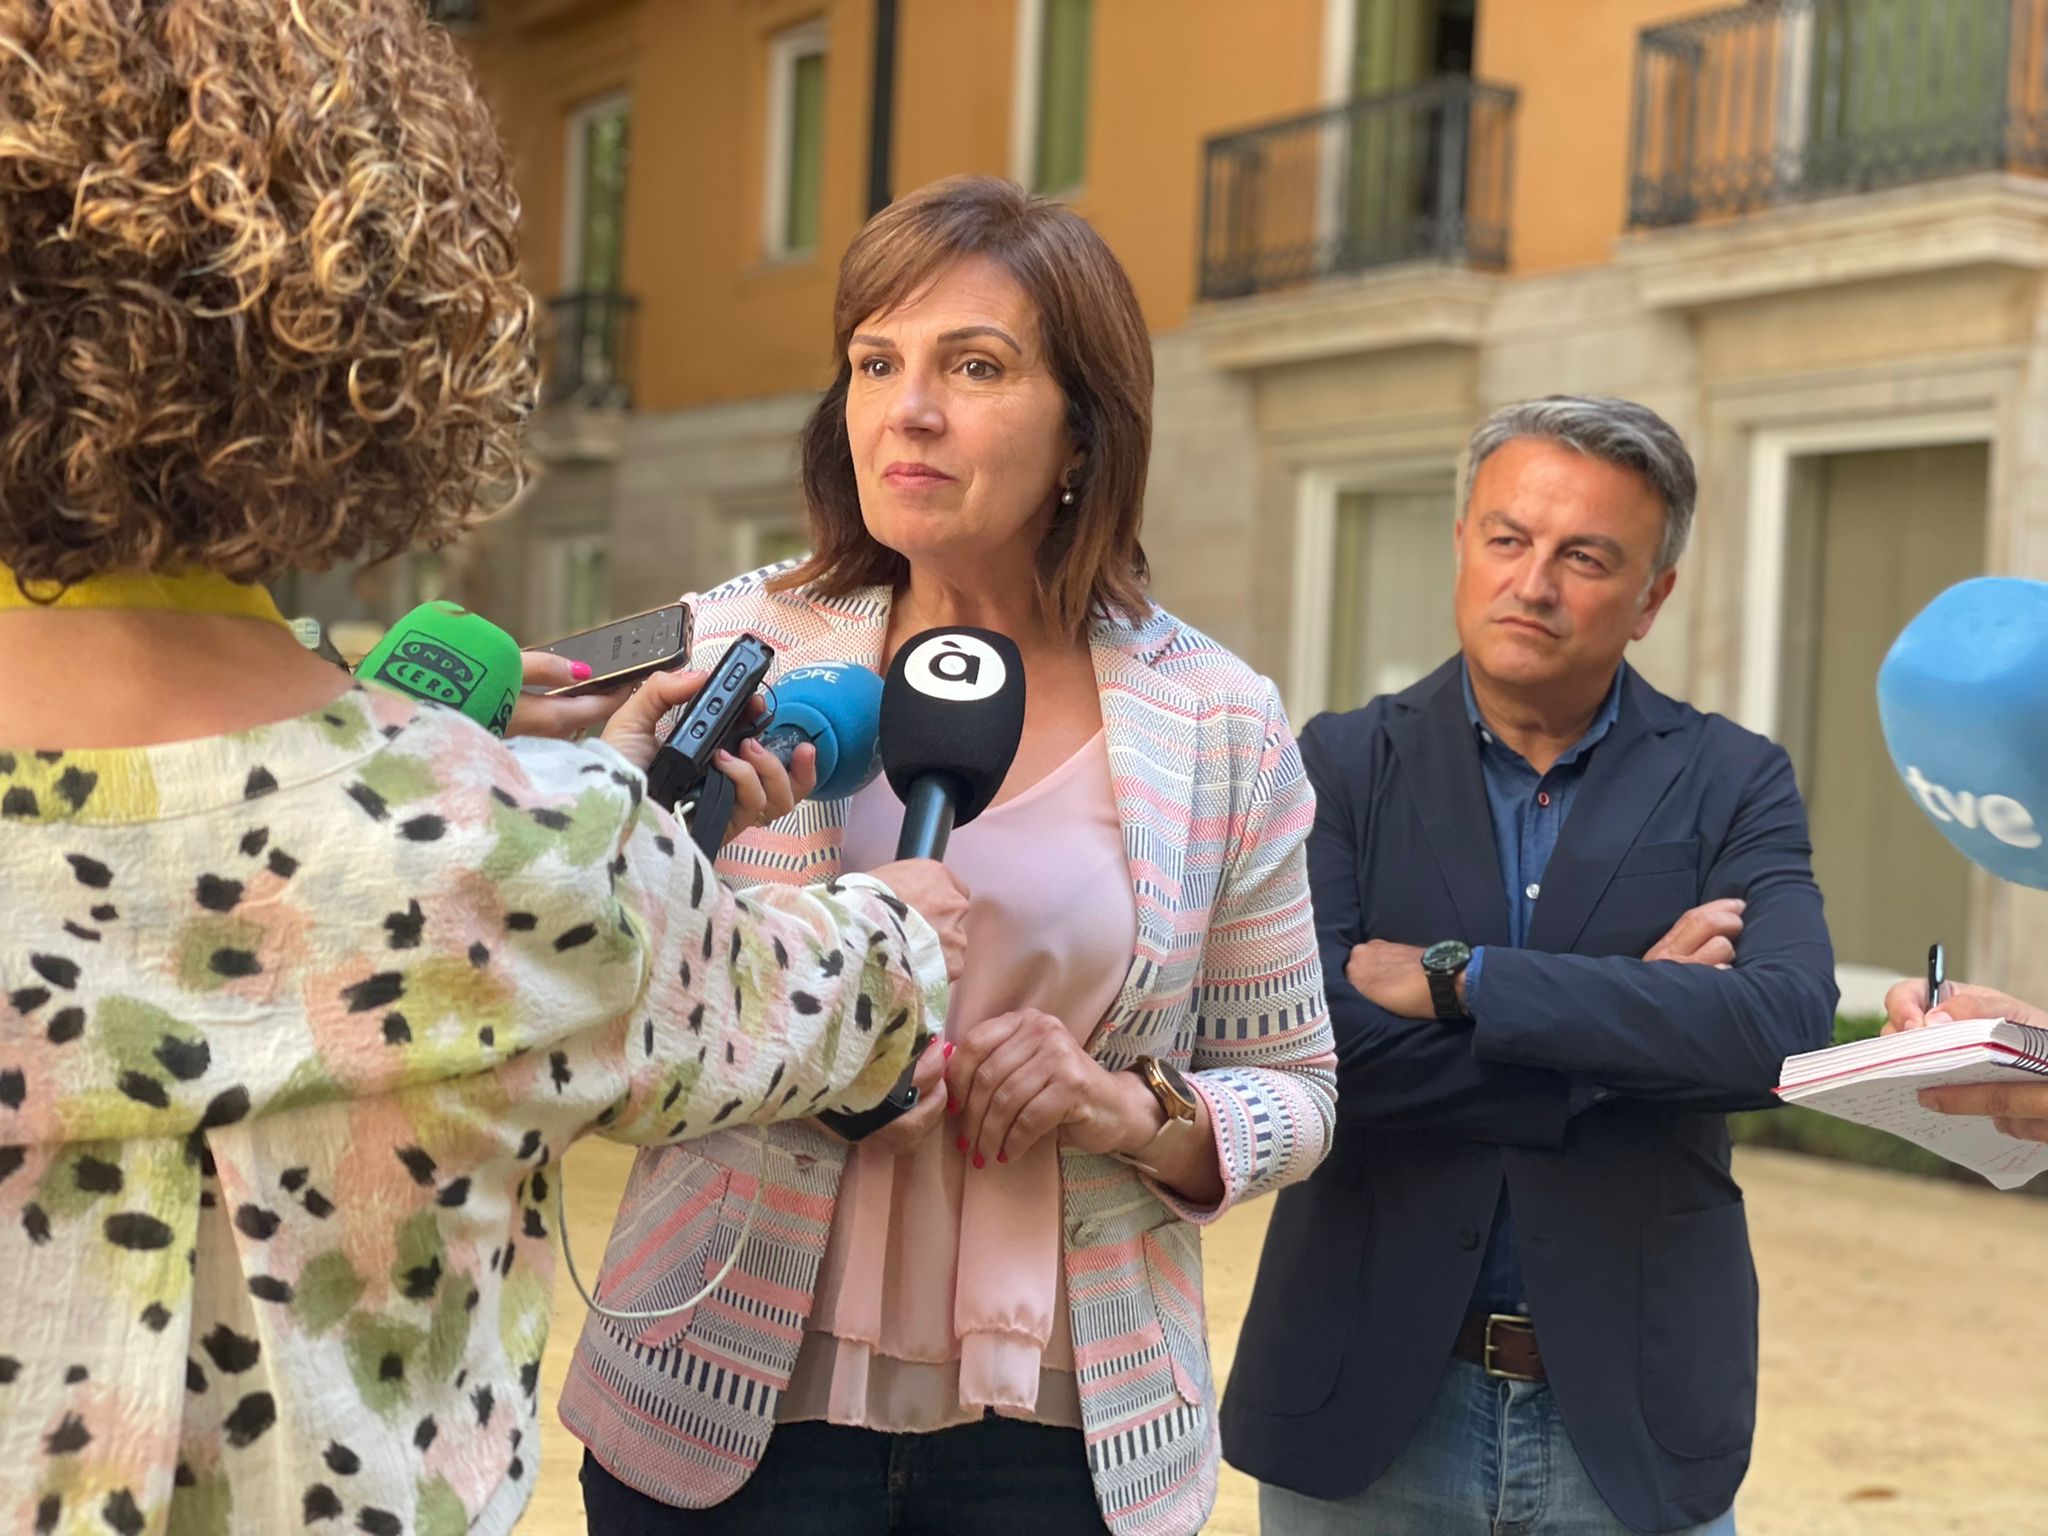 En este momento estás viendo Martínez: “El 97,4% de los valencianos y valencianas estamos de enhorabuena gracias a la reforma fiscal del Consell de Ximo Puig”